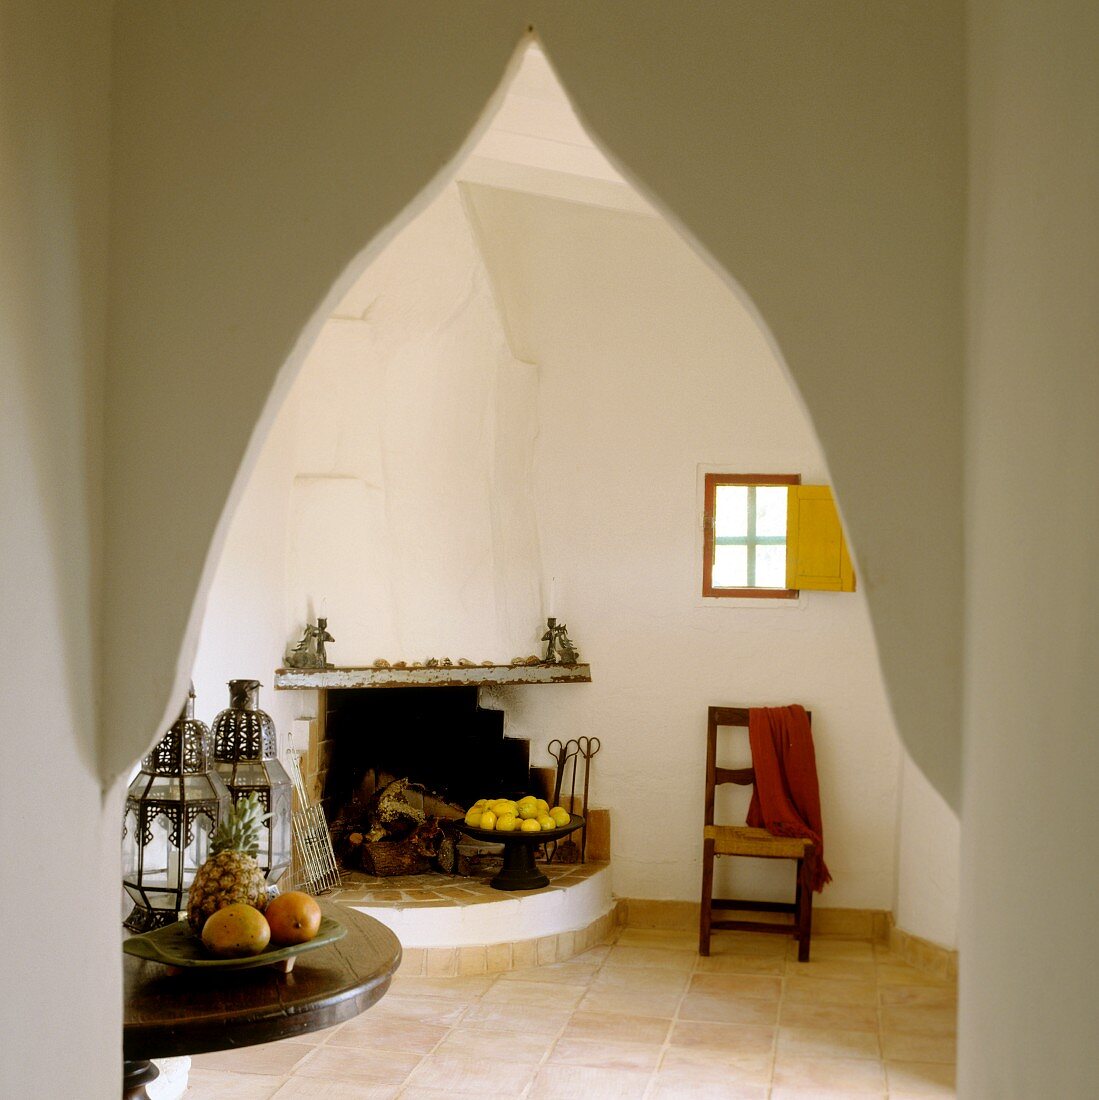 Blick durch orientalischen Spitzbogen auf offenem Kamin in schlichtem Zimmer